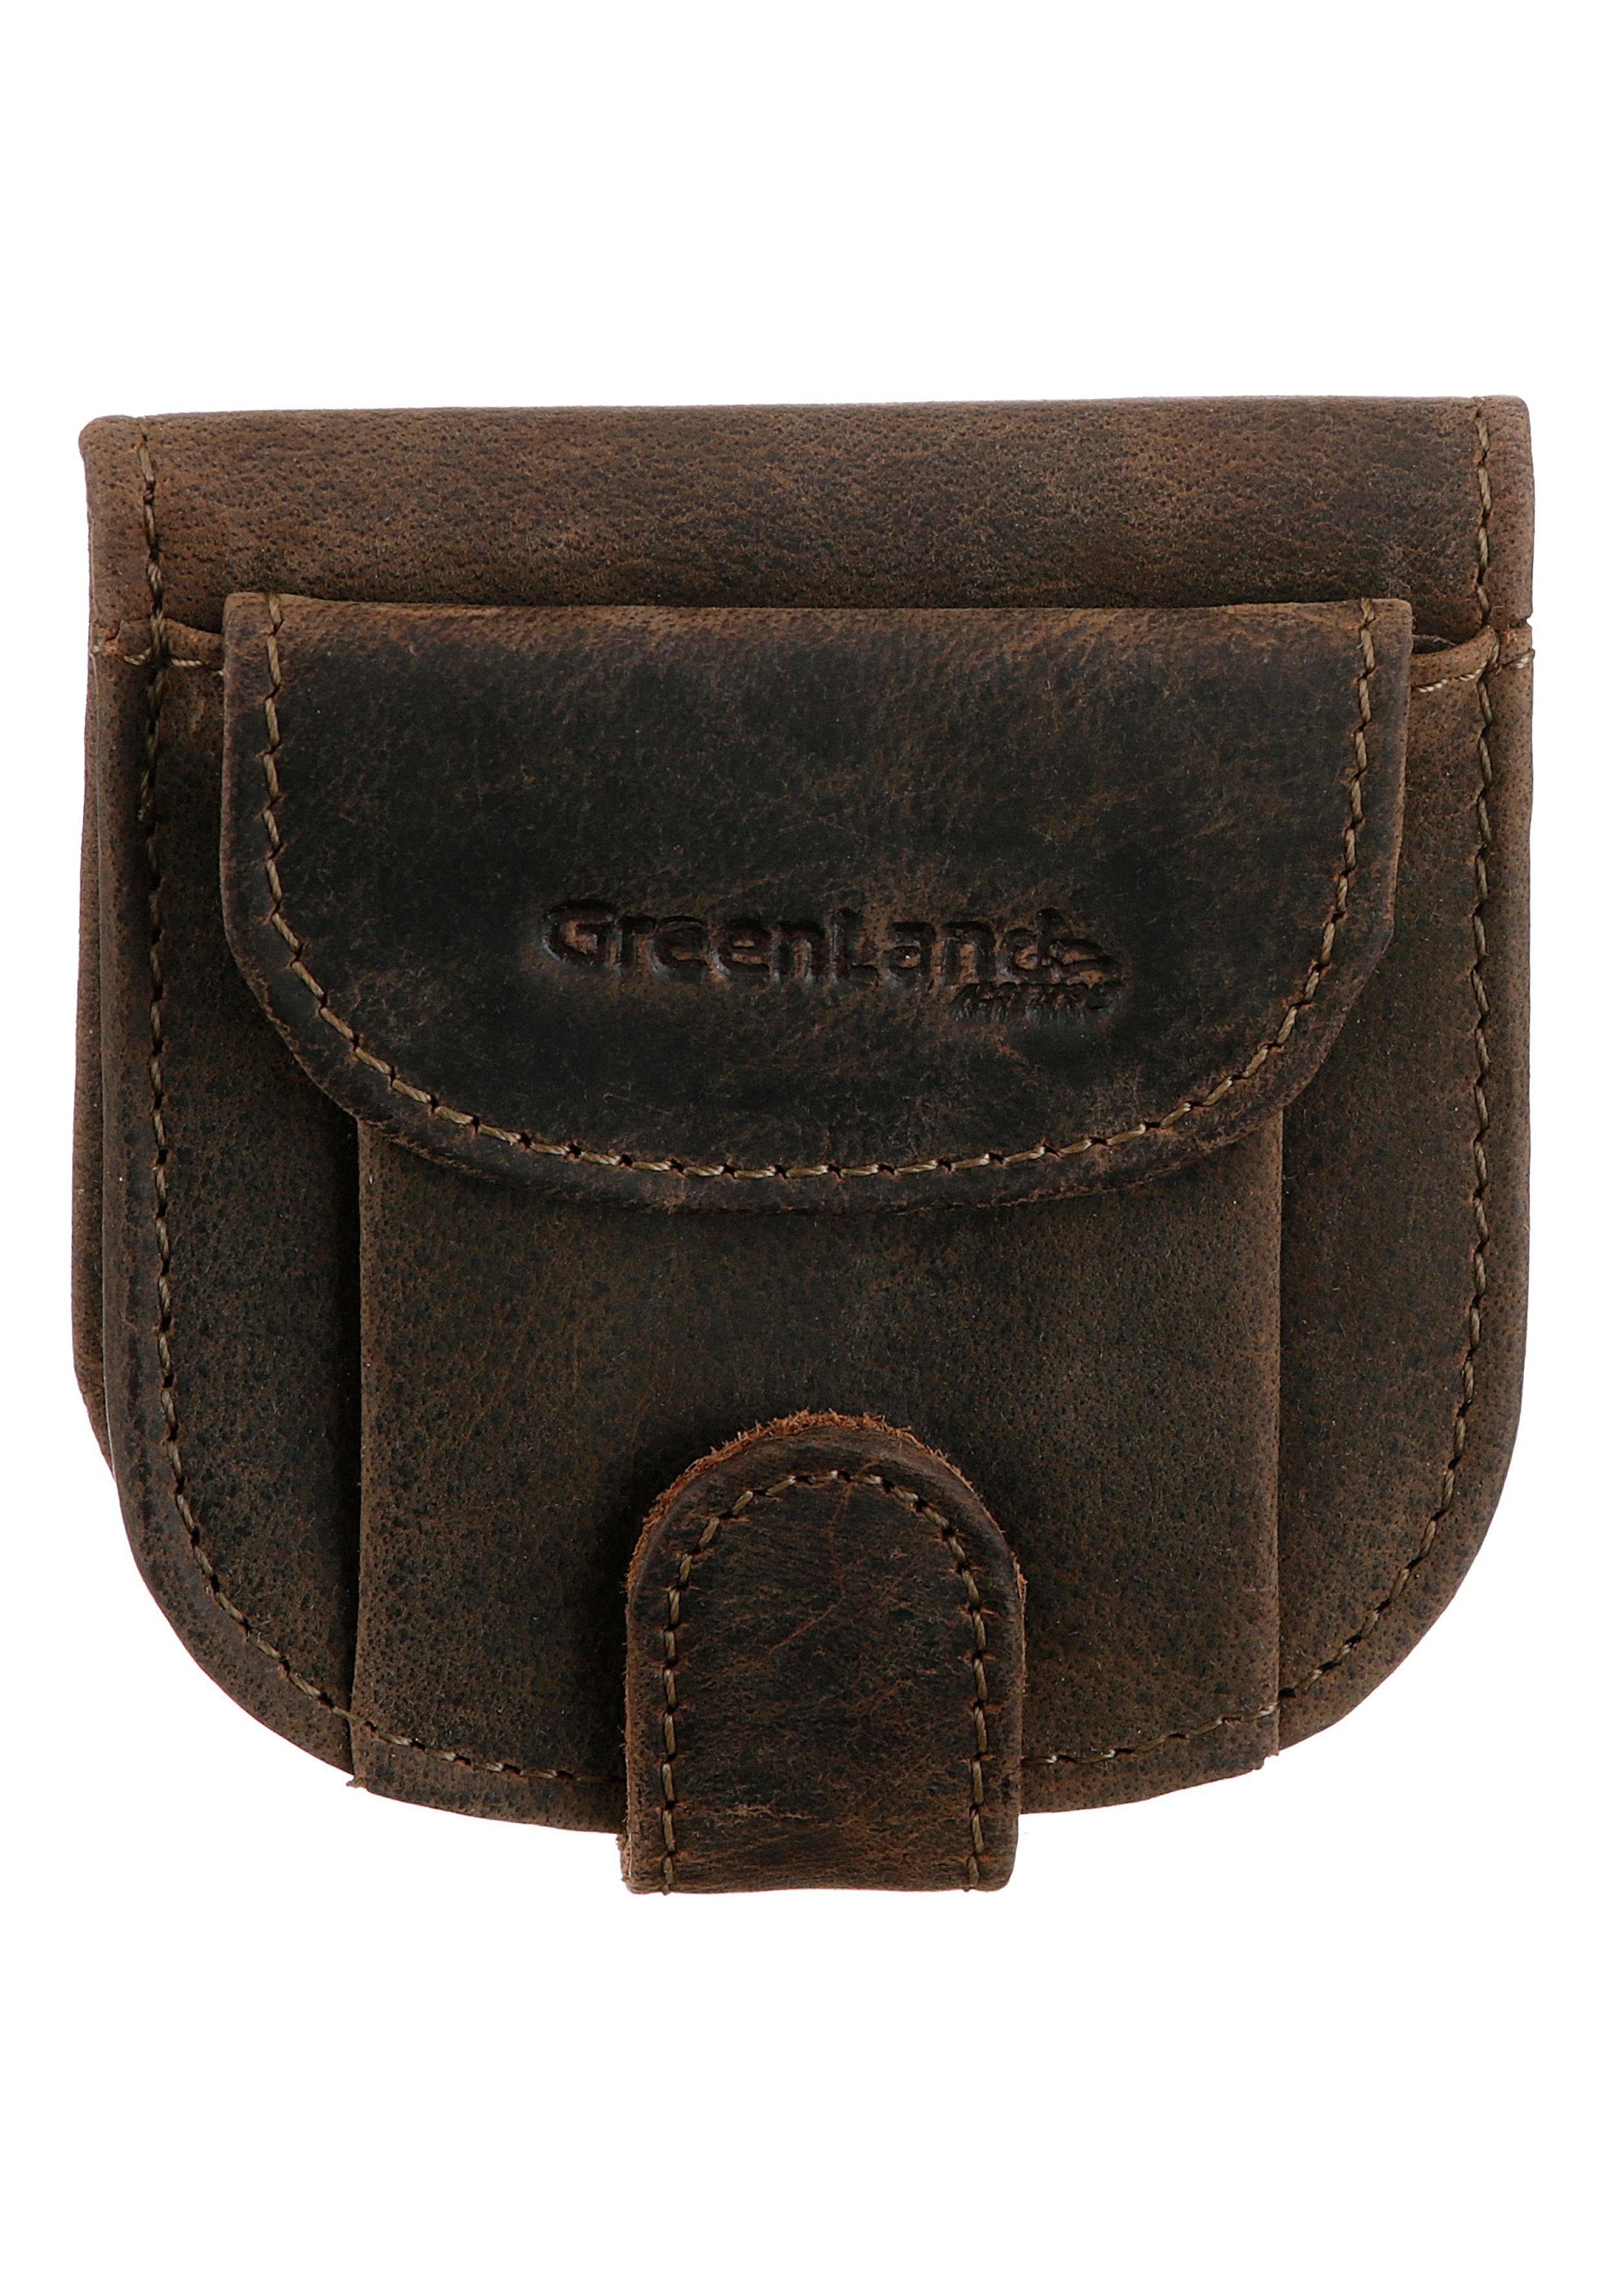 GreenLand kleinen Geldbörse im Stone, Nature Format Leder, aus echtem